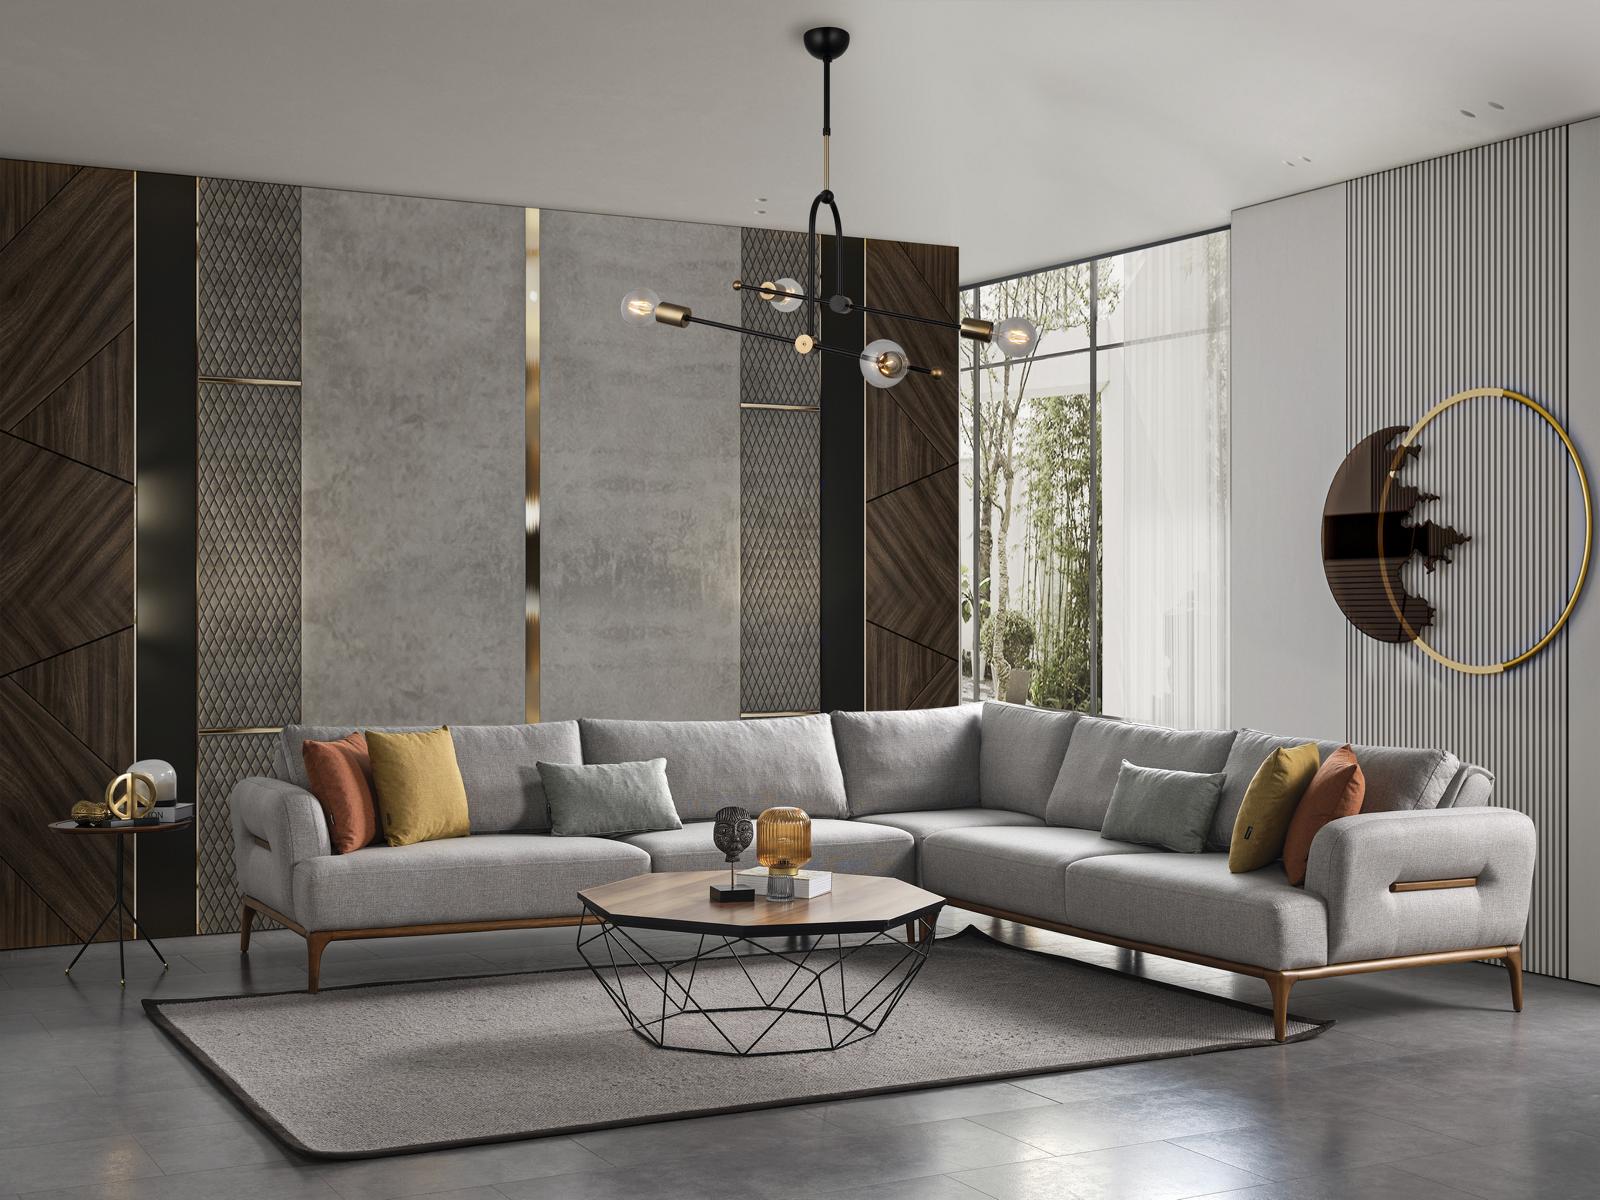 Ecksofa L Form Couch Wohnzimmer Polster Design neu grau Modern